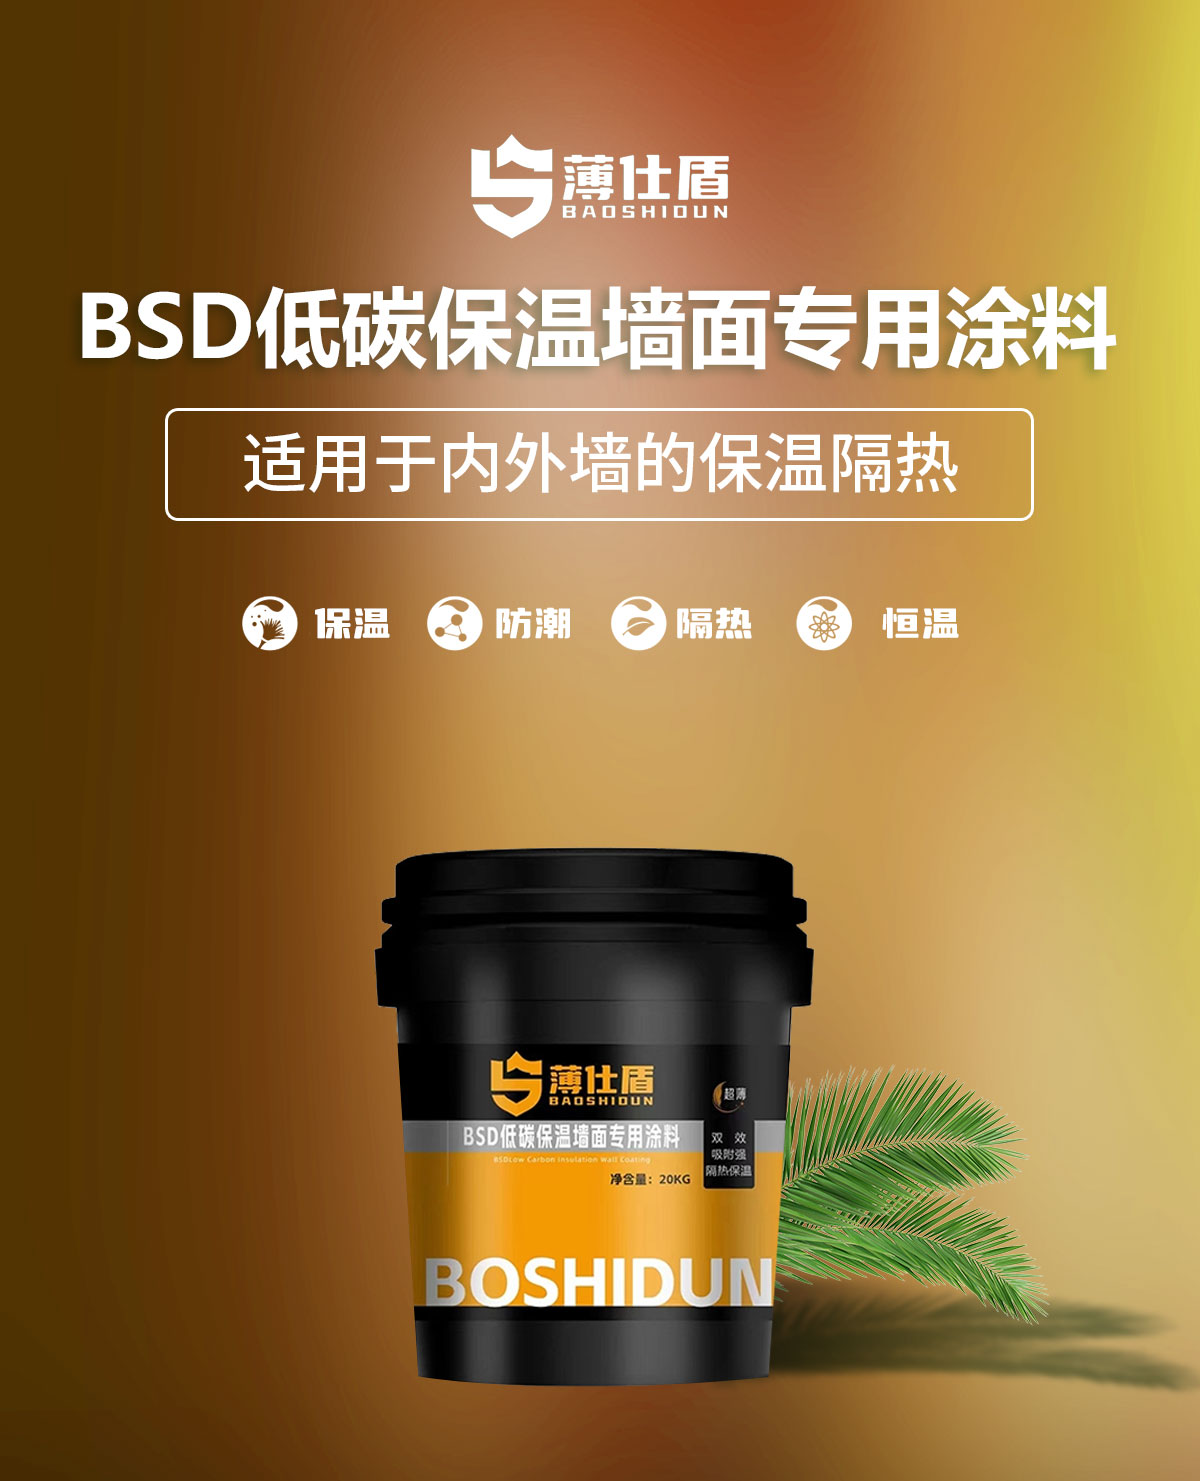 Shandong Benai new energy Technology Co., LTD